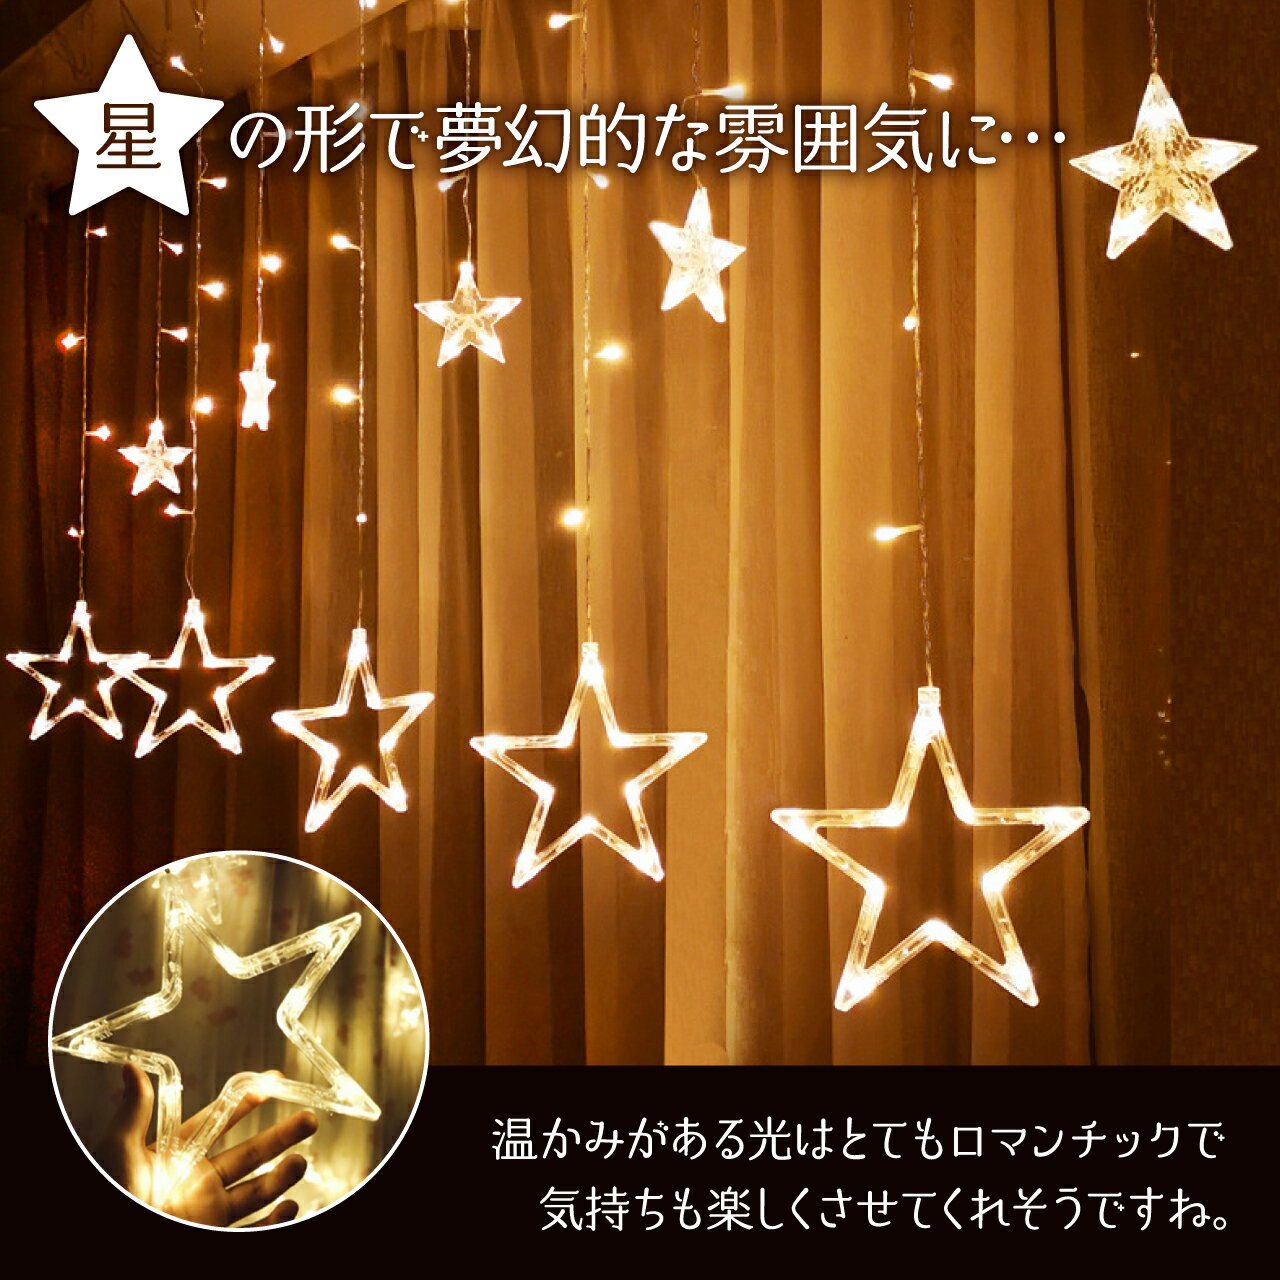 星型イルミネーション 星LED ガーランド LED ライト 電池式 USB給電 デコレーション クリスマスツリー 飾り付け タペストリー